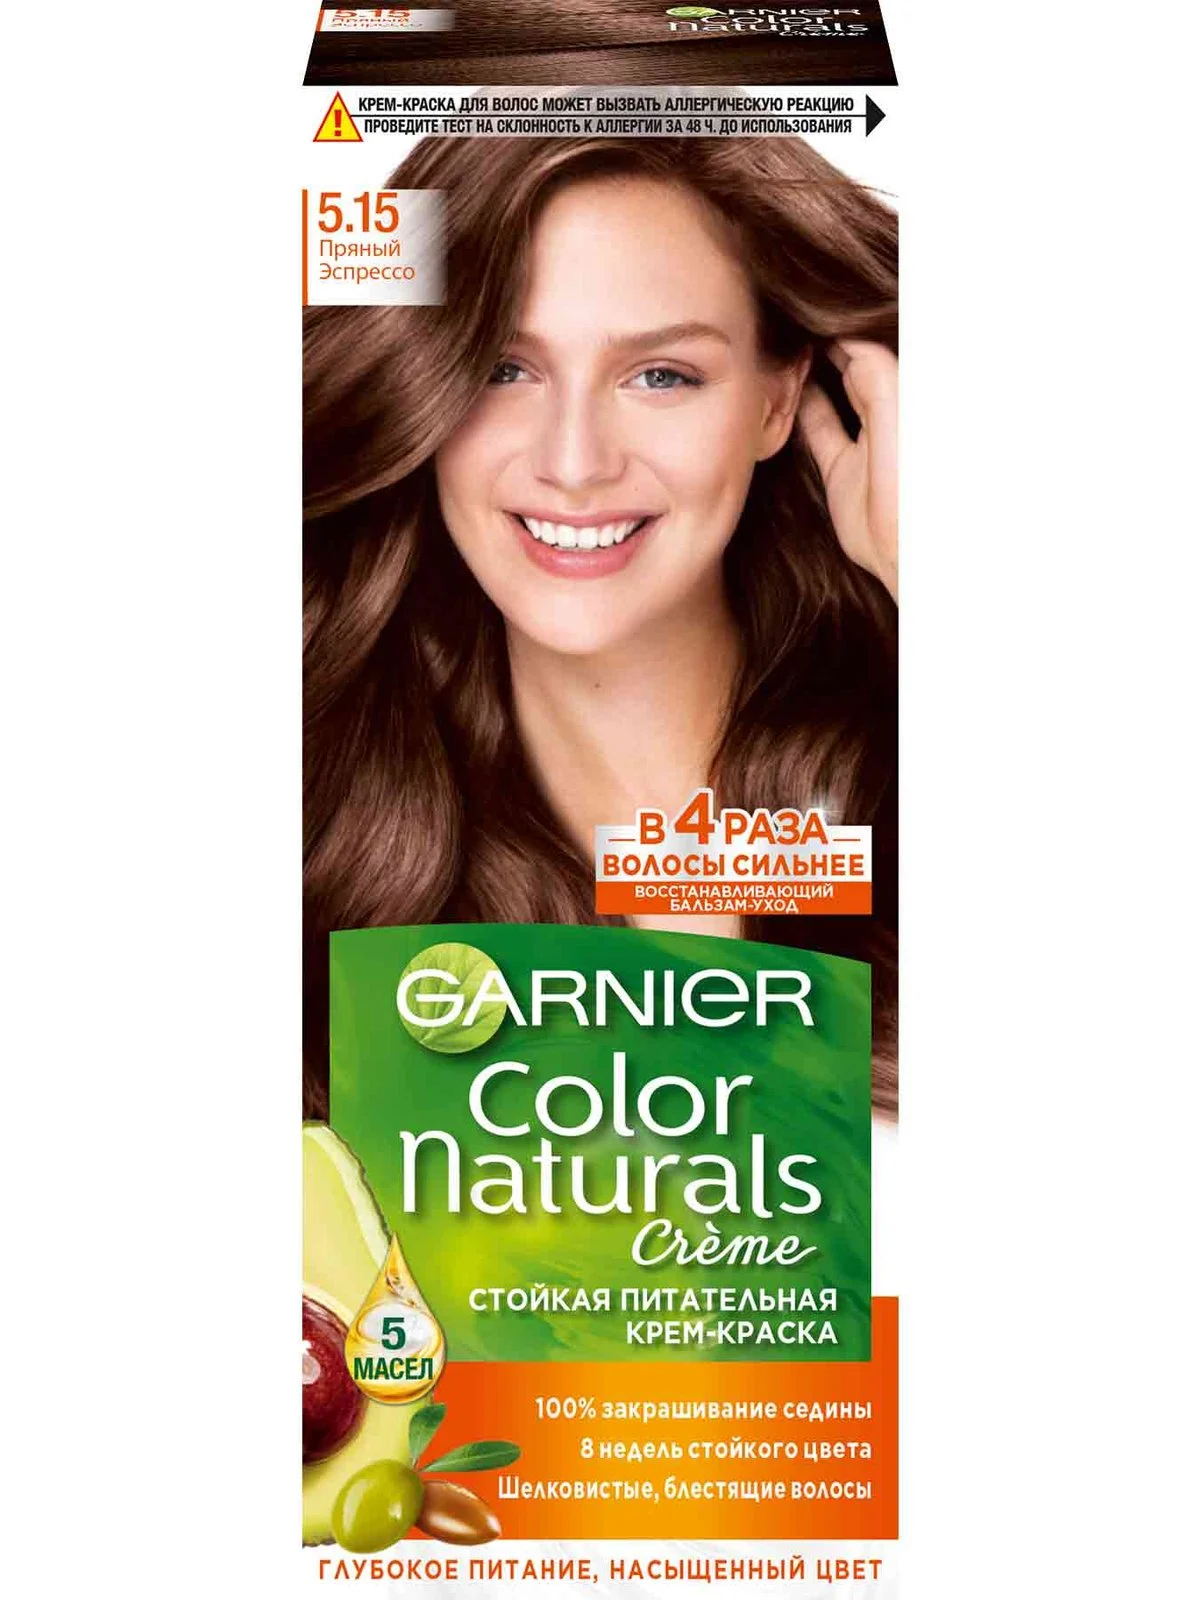 GARNIER Color Naturals стойкая питательная крем-краска для волос, 5,15, Пряный эспрессо, 110 мл